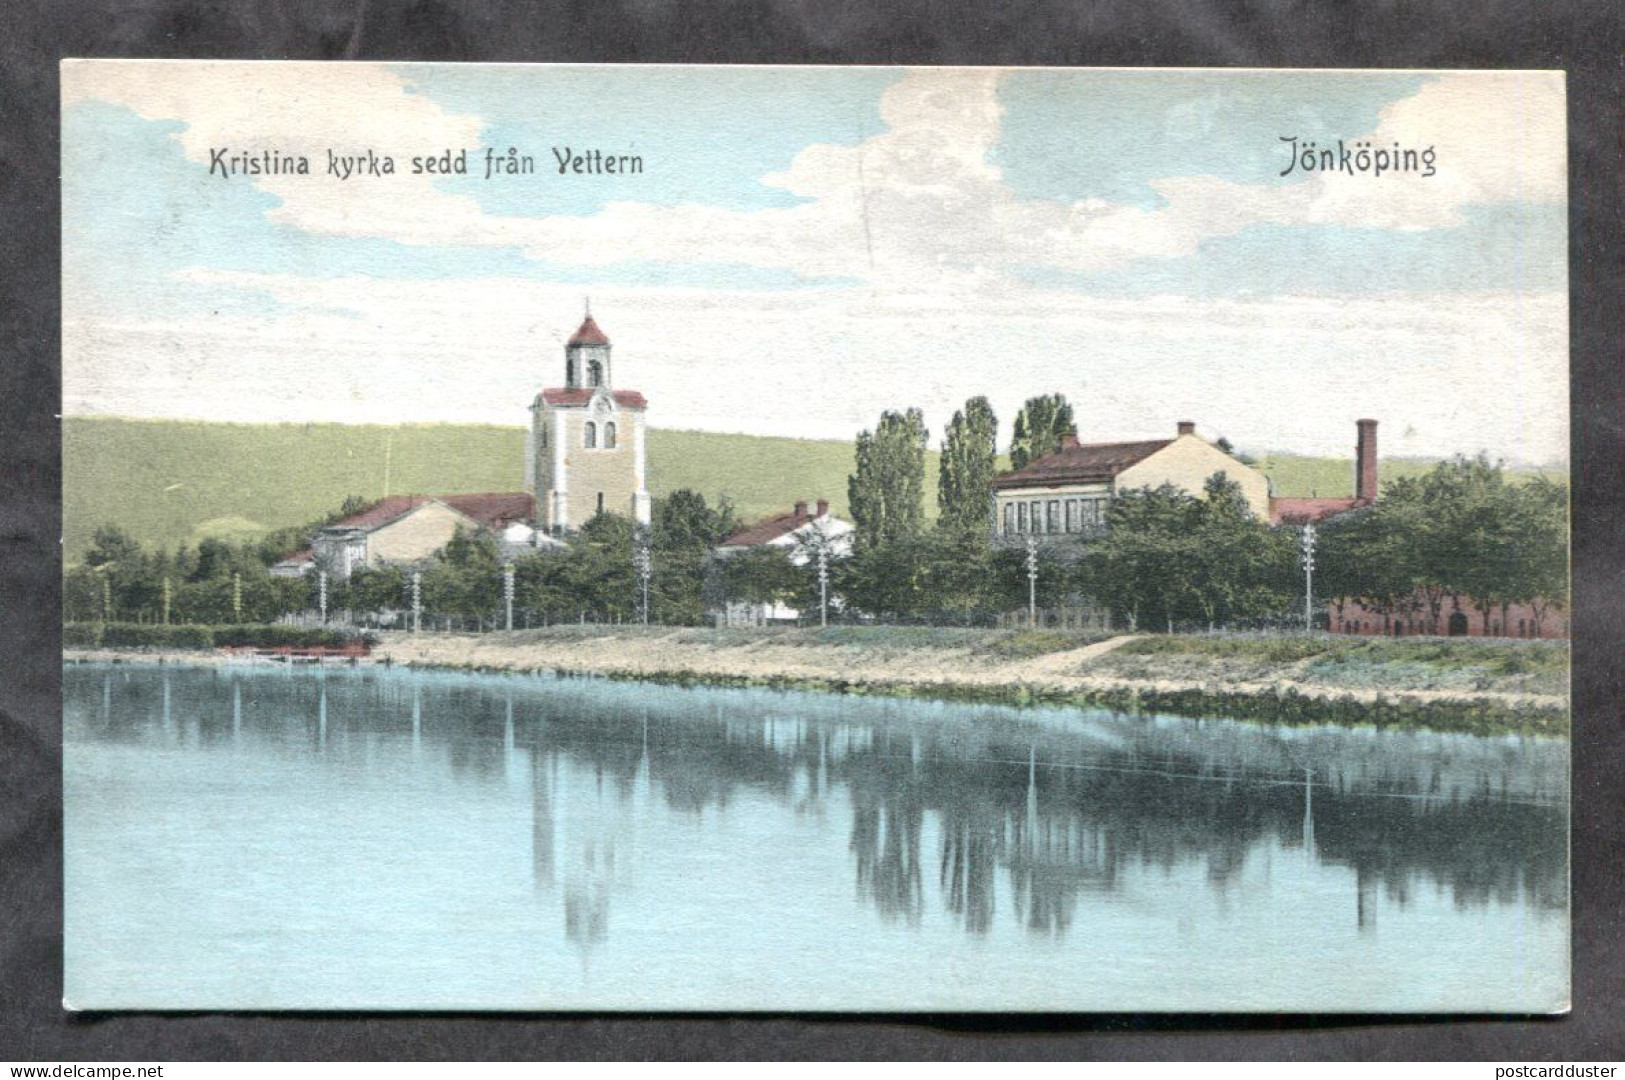 Jönköping Sweden 1910s Postcard (h1008) - Sweden